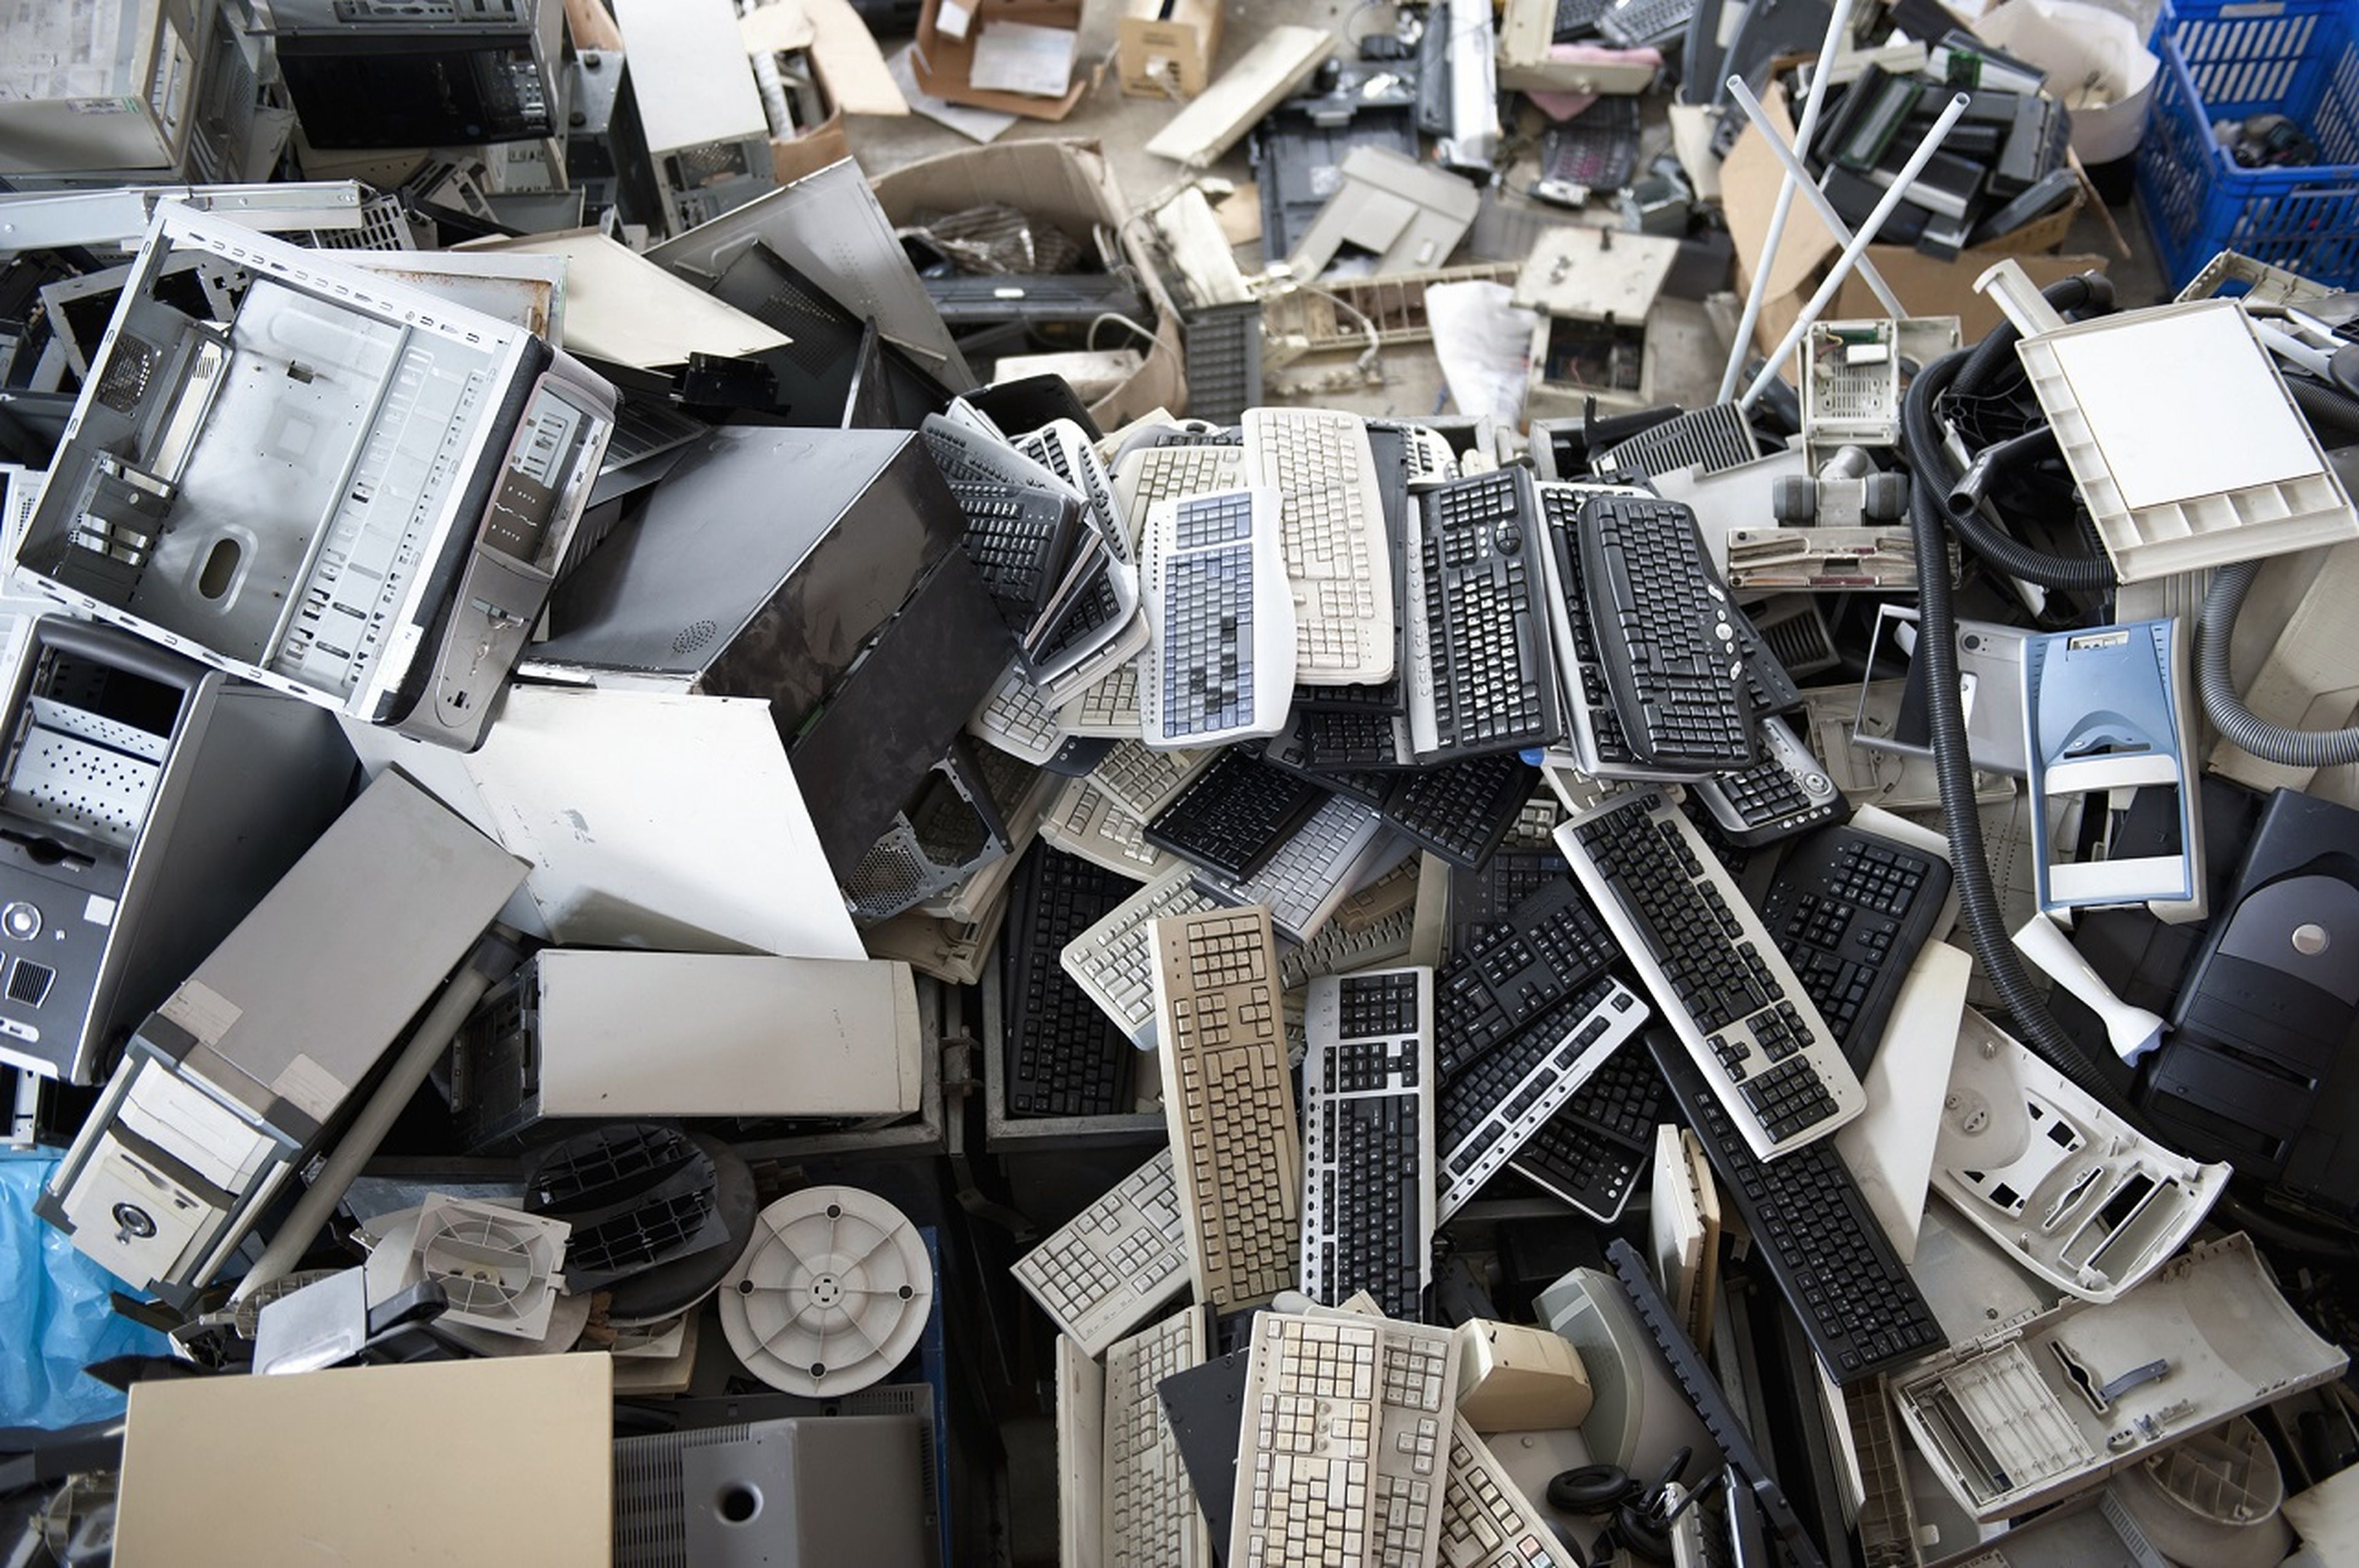 Muchos ordenadores acaban en la basura por la obsolescencia informática